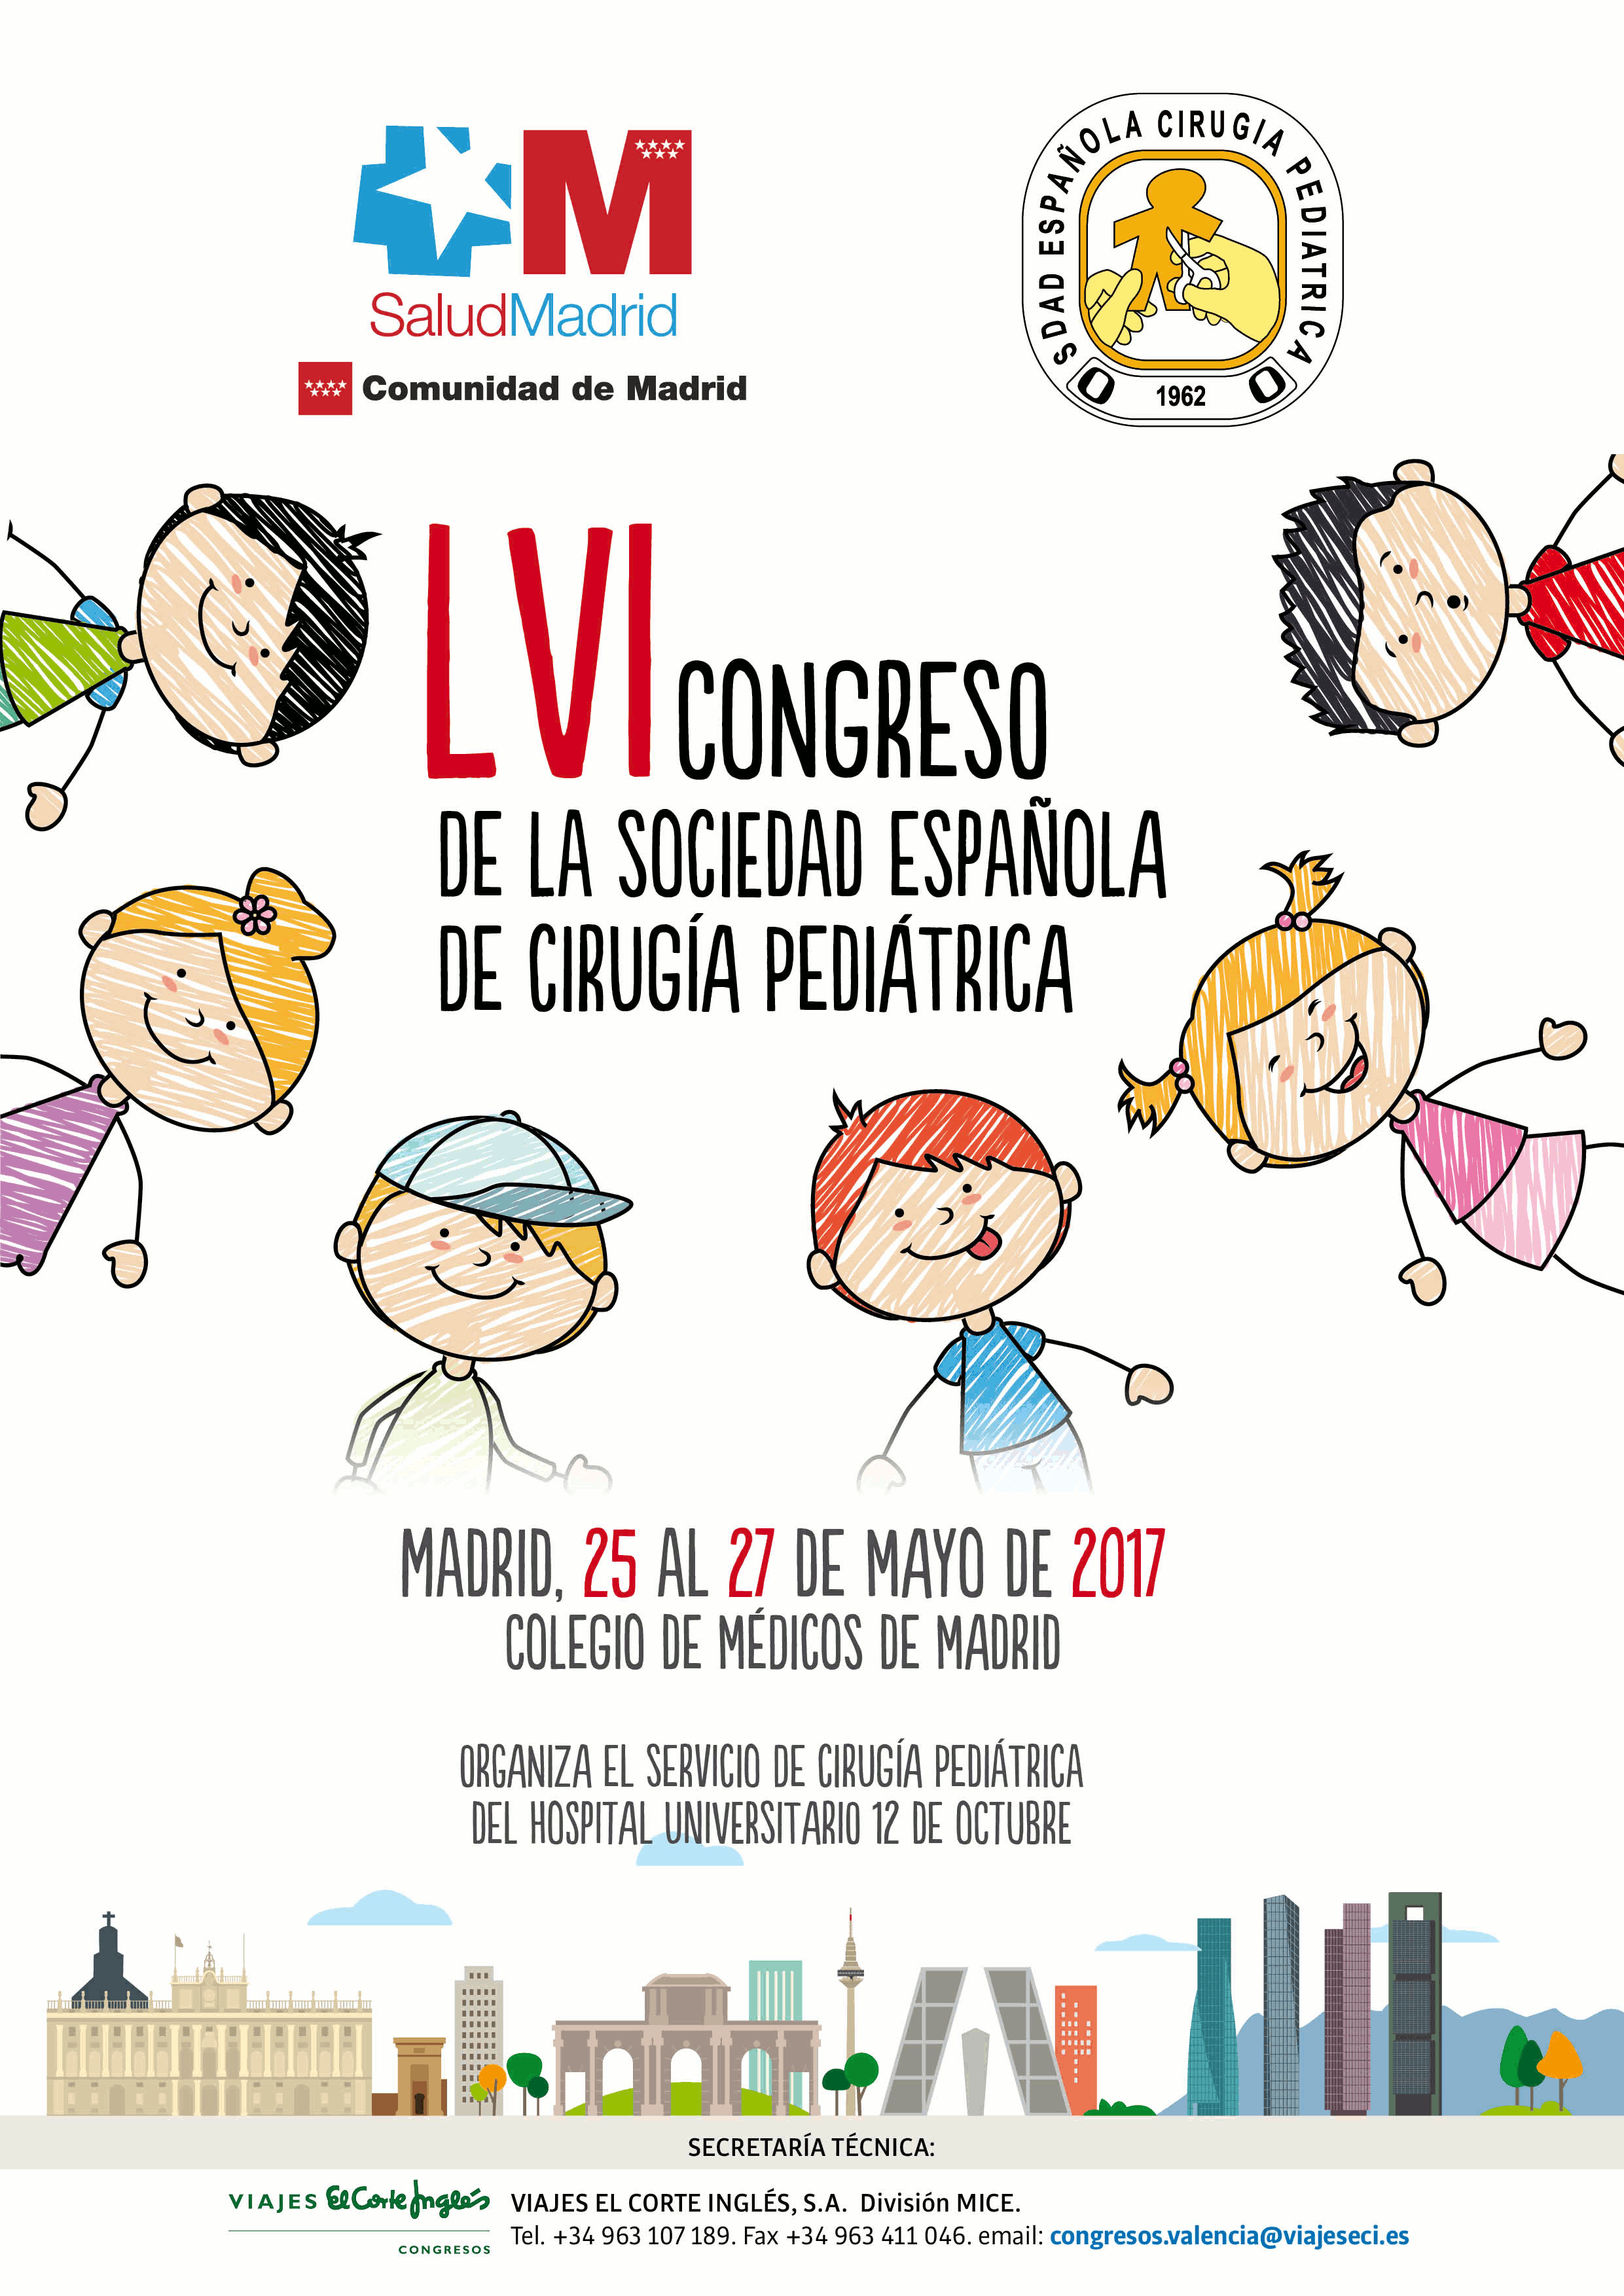 LVI Congreso de la Sociedad Española de Cirugía Pediátrica